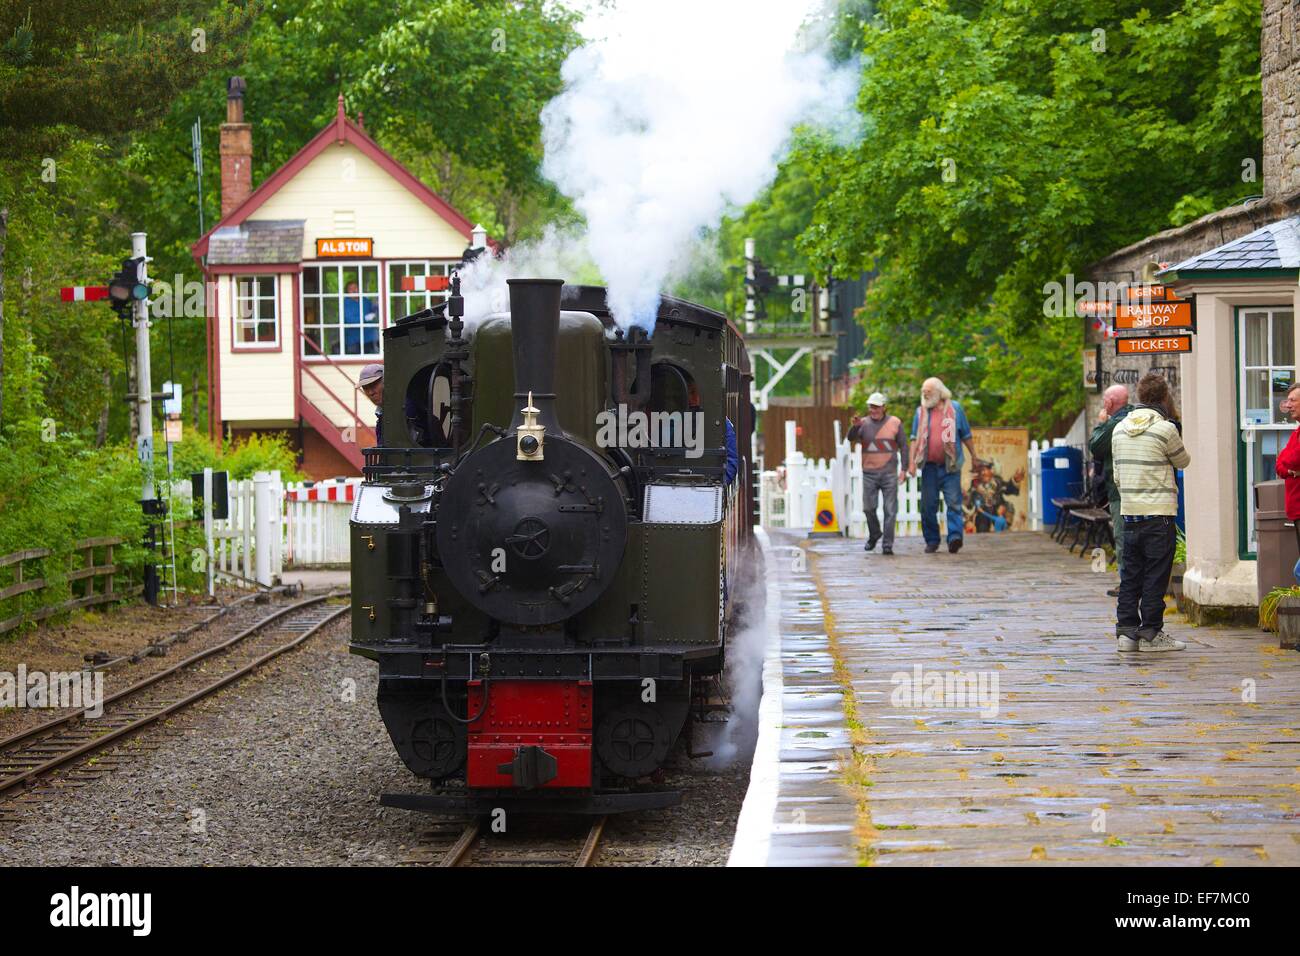 Locomotiva a vapore "Thomas Edmondson" arrivando a Alston stazione sul South Tynedale Railway, Alston, Cumbria, Inghilterra, Regno Unito. Foto Stock